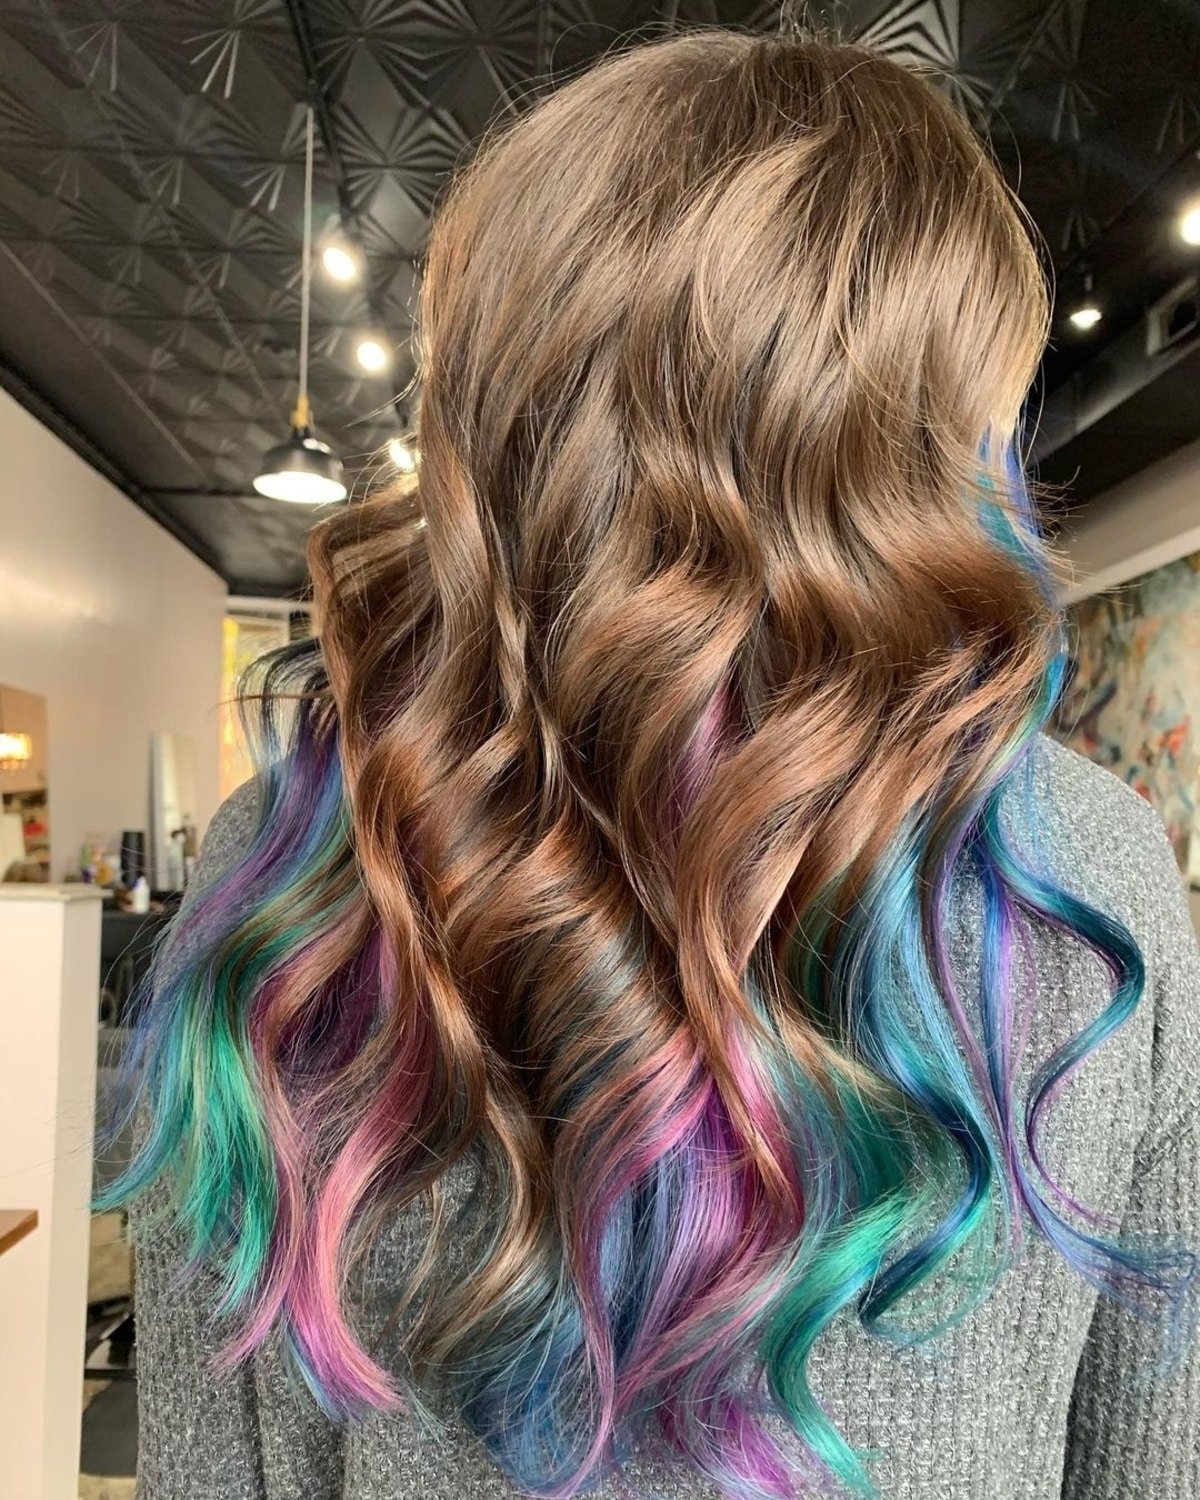 Mermaid-inspired peekaboo hair